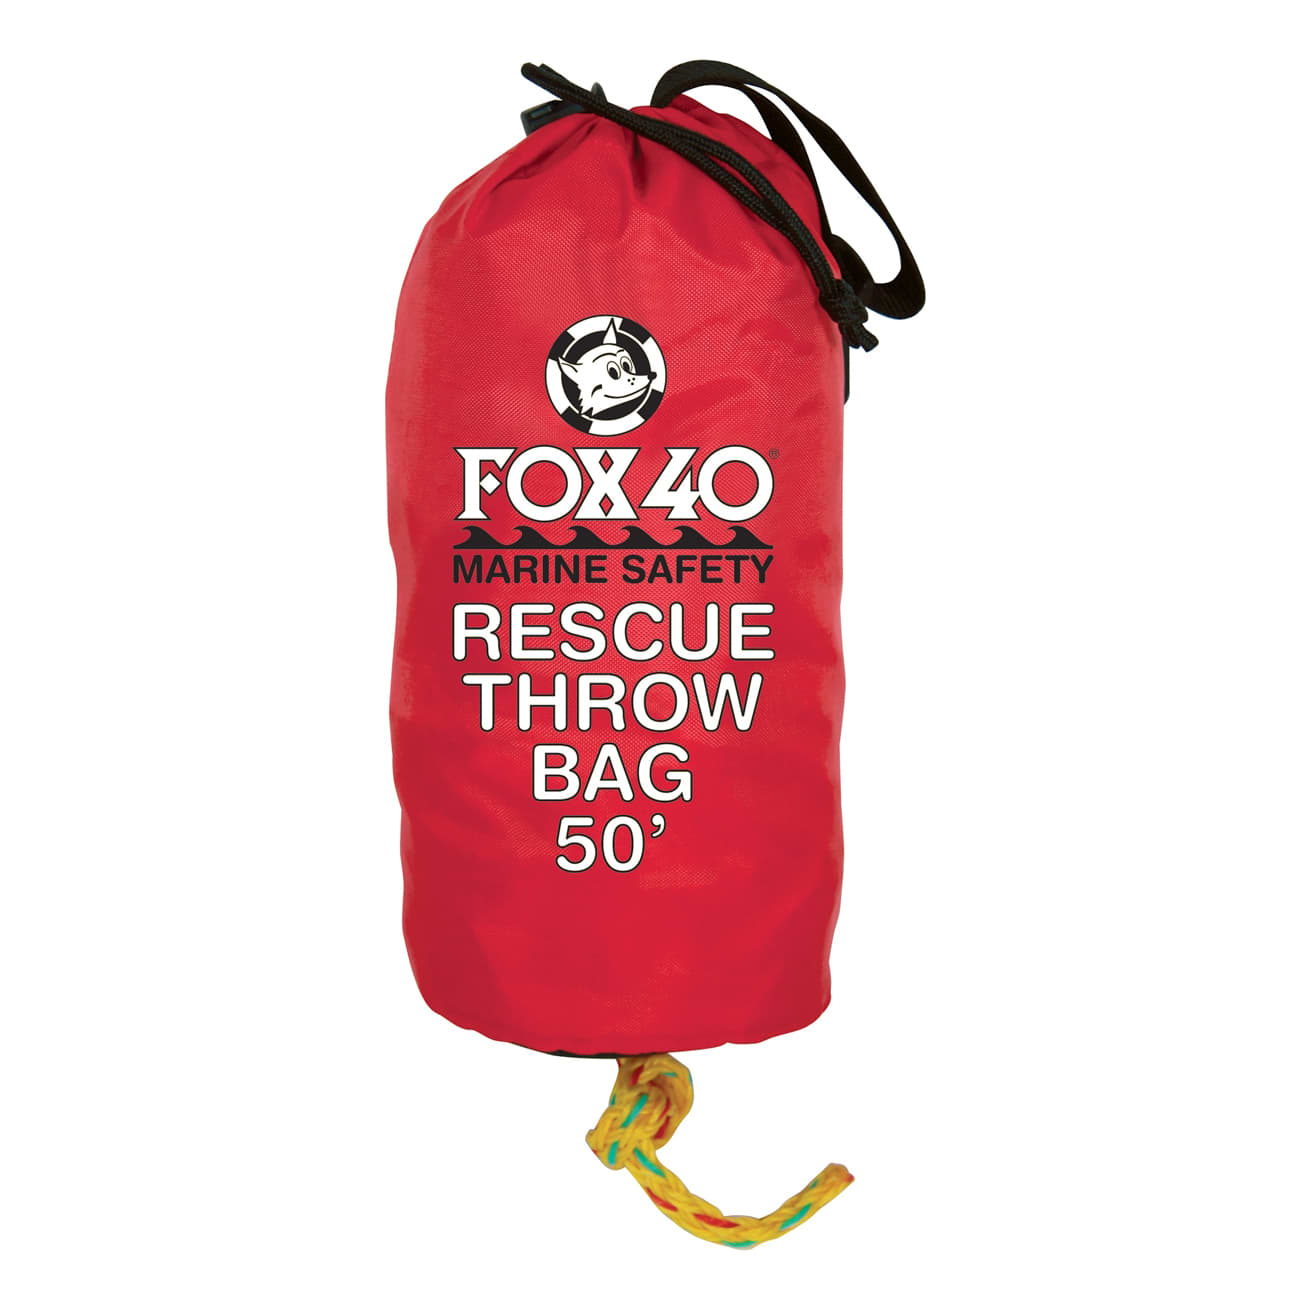 Fox 40 Marine Rescue Throw Bags - 50'